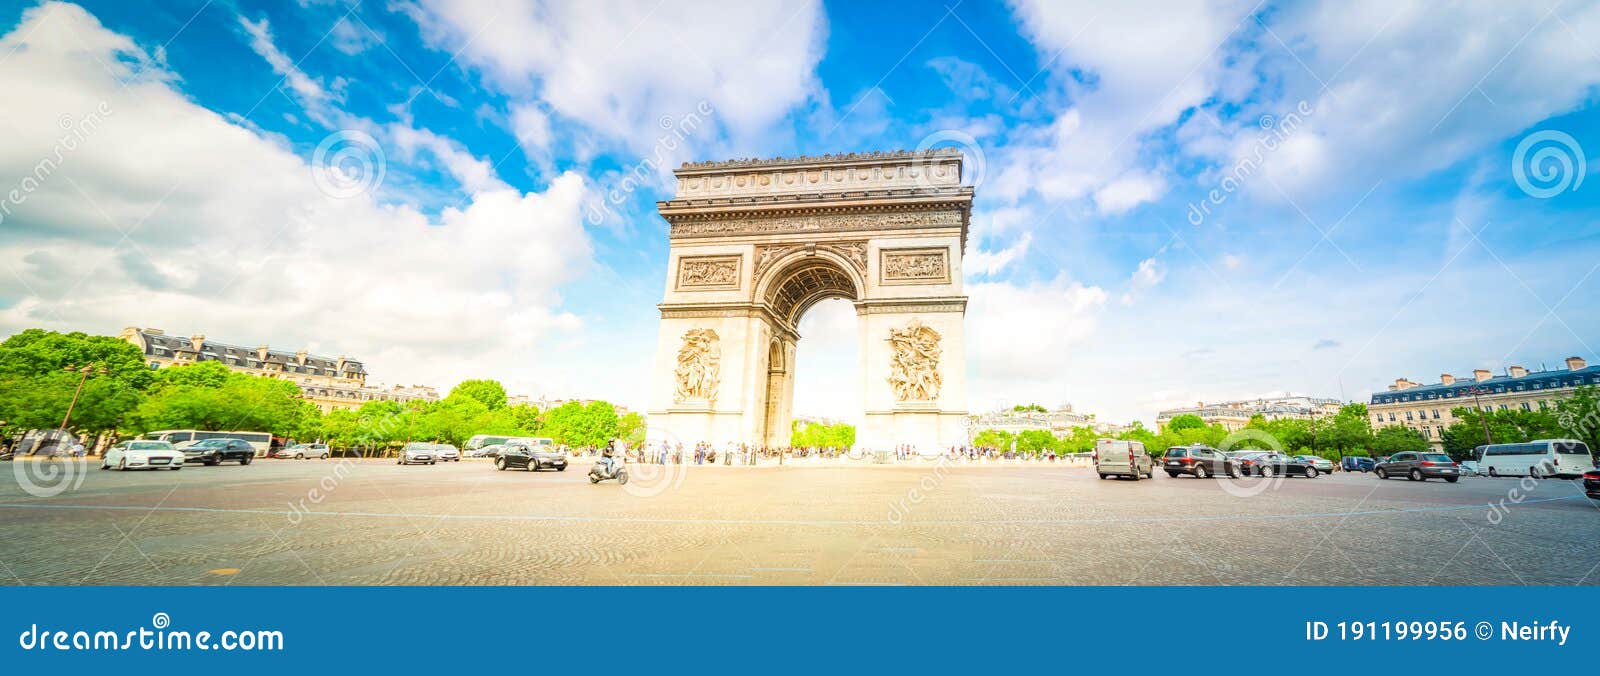 巴黎凯旋门库存照片 图片包括有胜利 生活 纪念碑 蠢材 中央 资本 纪念 都市风景